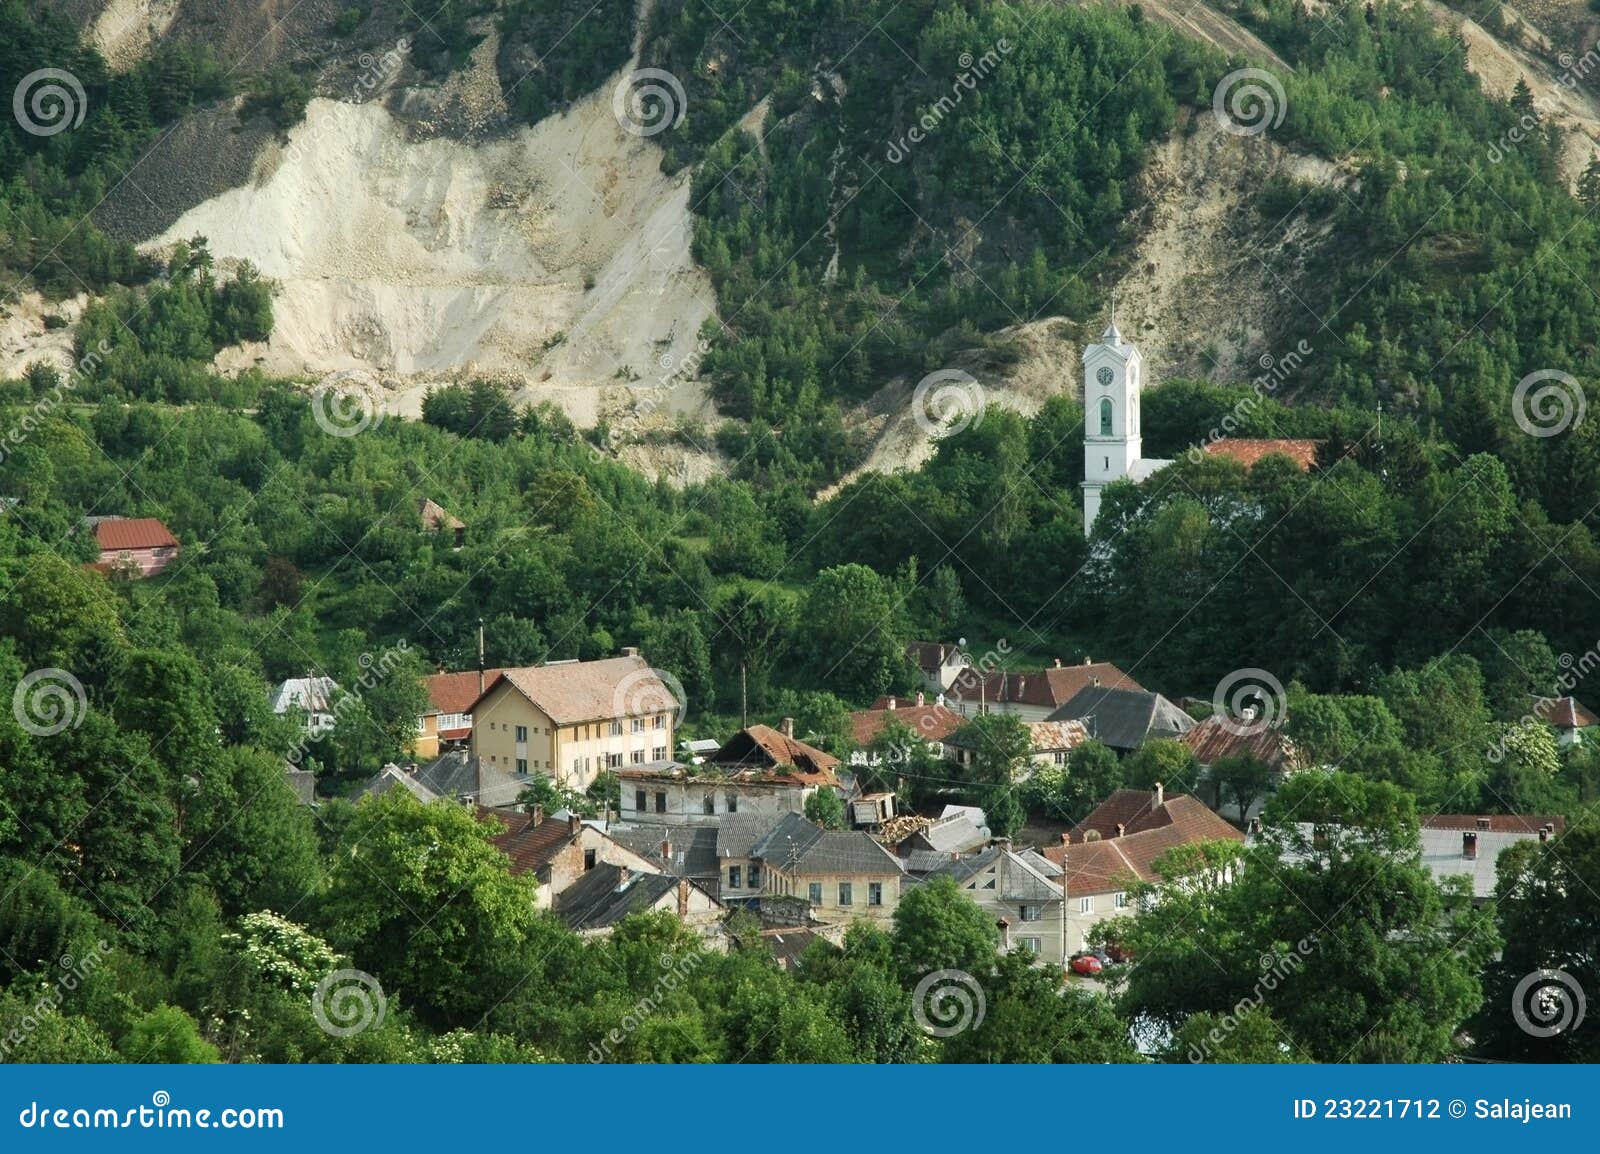 mining town, rosia montana, romania